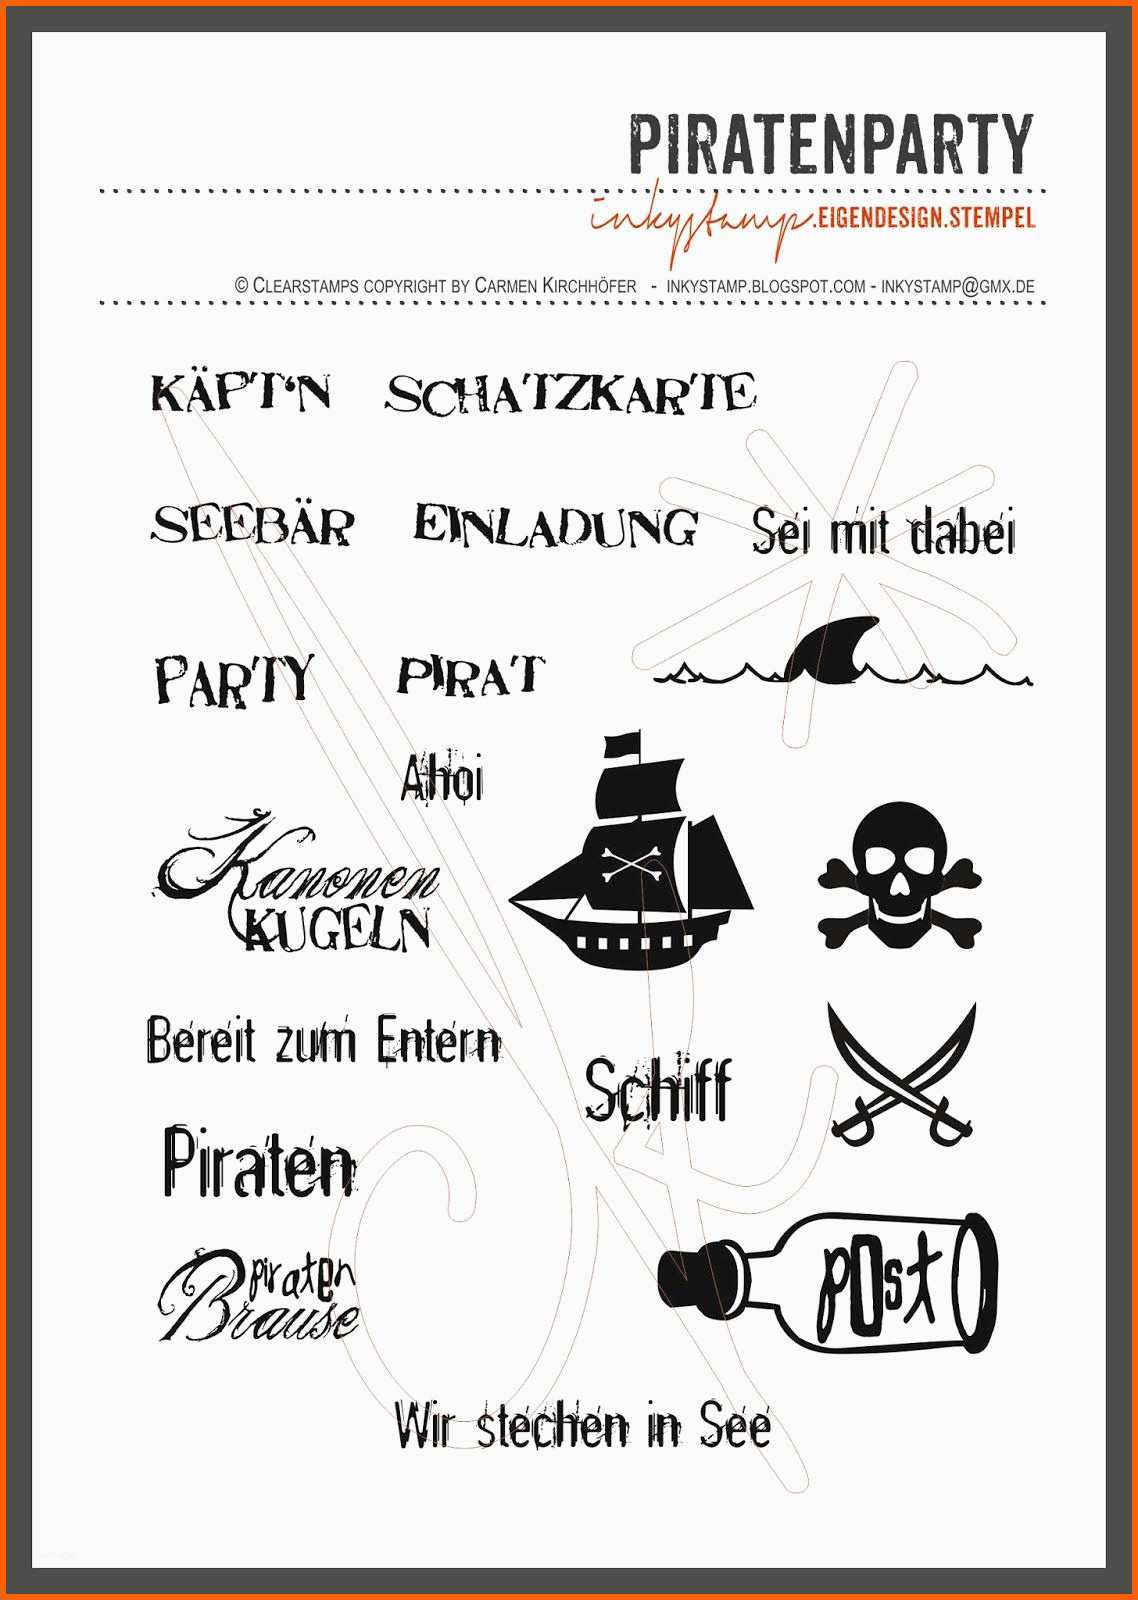 einladung piratenparty text